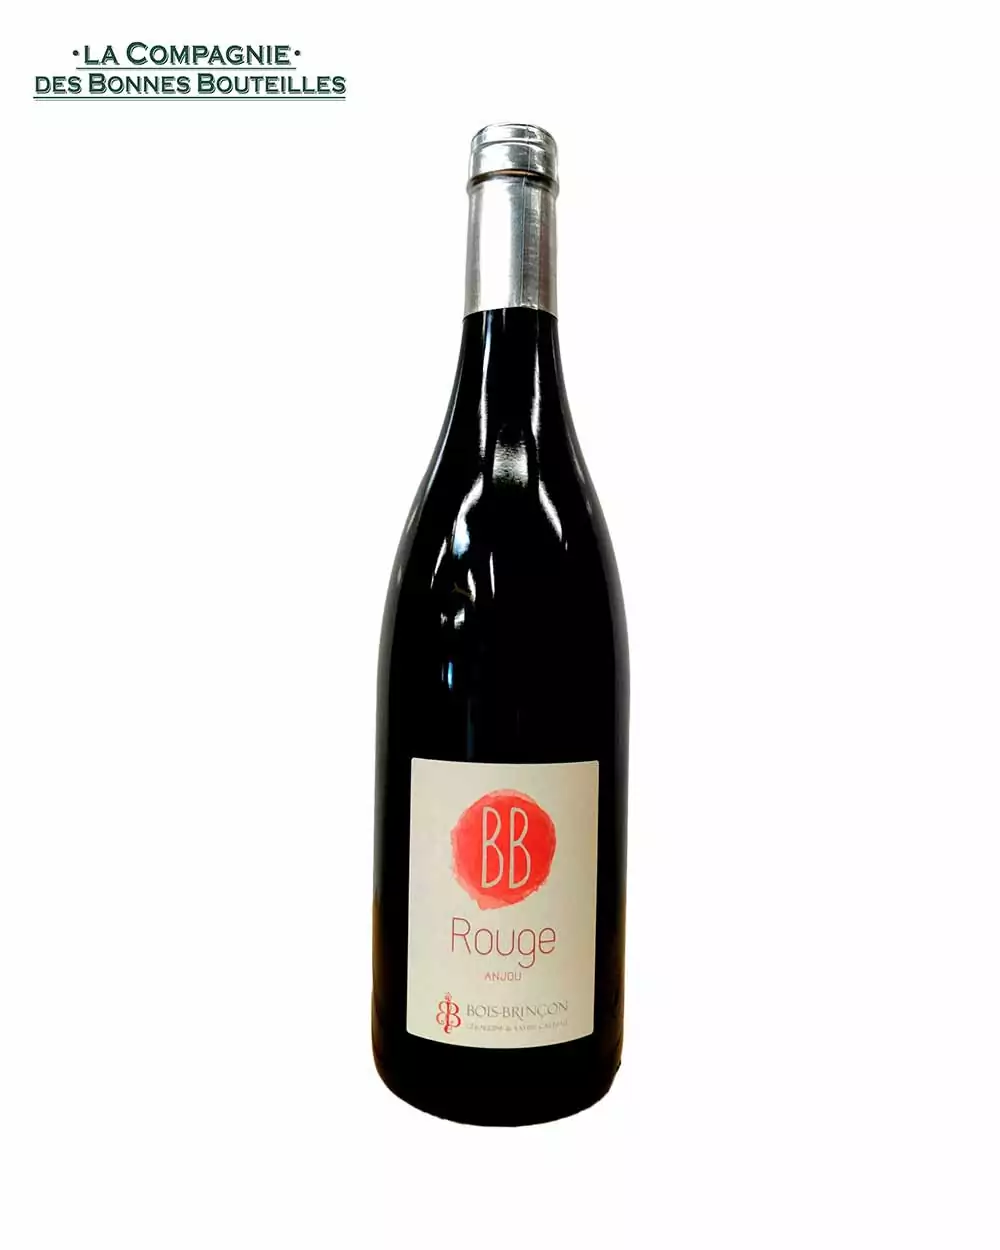 Vin rouge - Anjou - Chateau de Bois Brinçon - BB rouge 2018